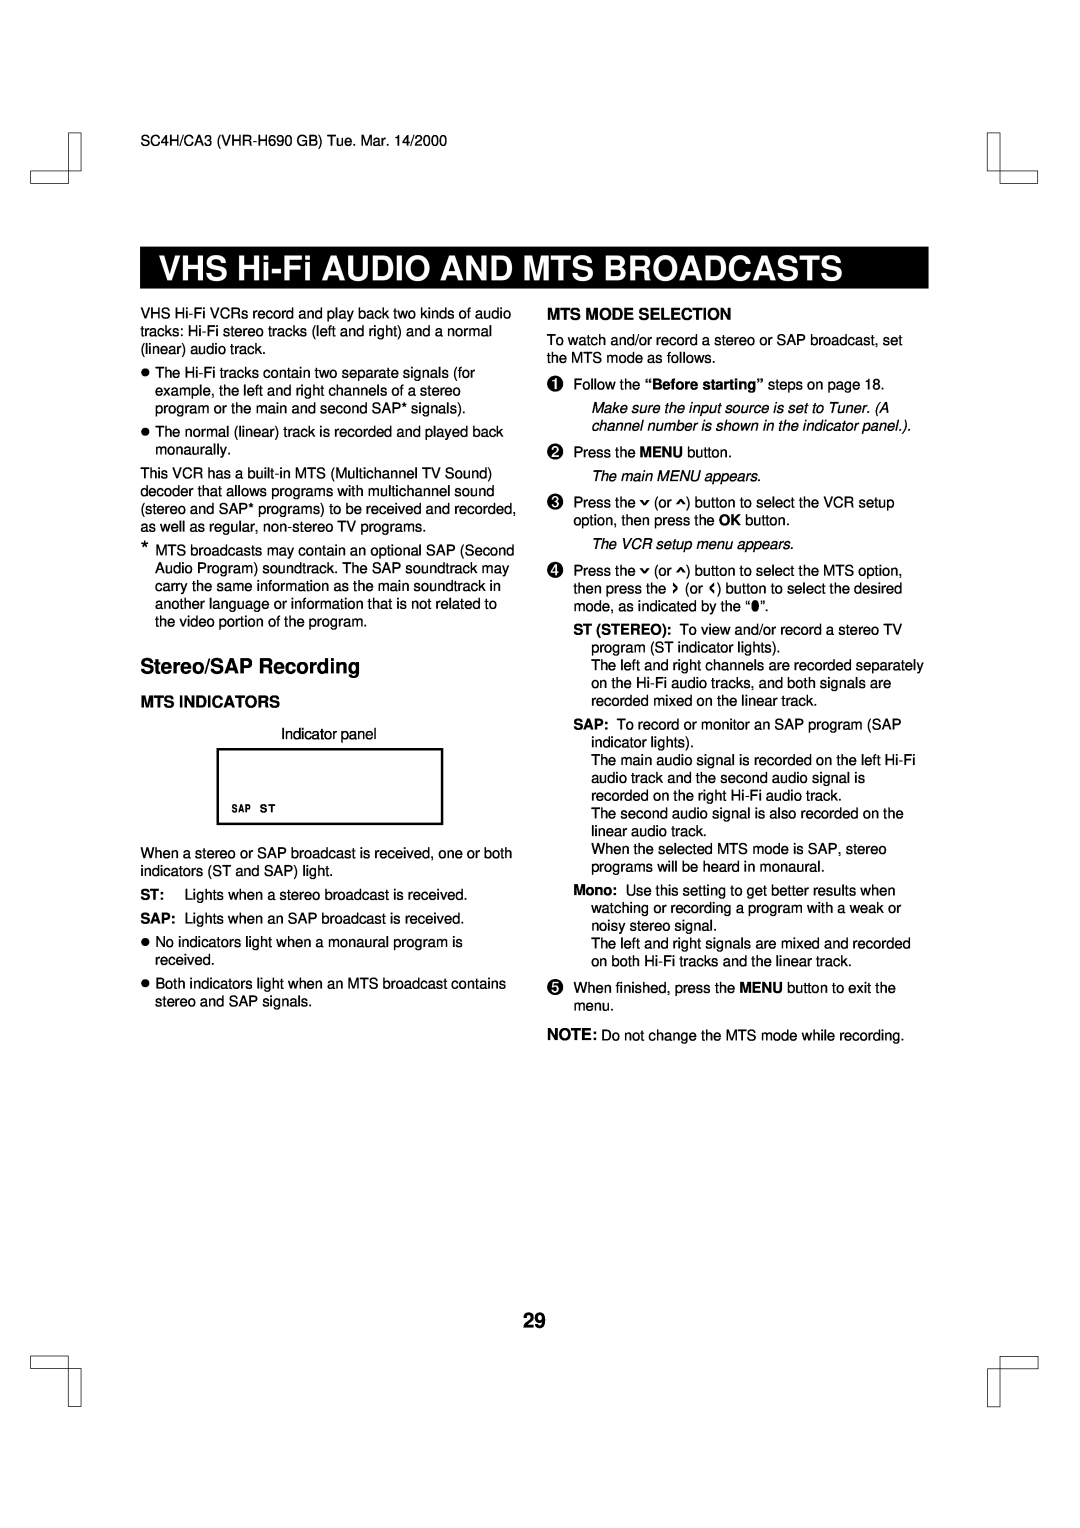 Sanyo VHR-H690 VHS Hi-Fi AUDIO AND MTS BROADCASTS, Stereo/SAP Recording, Mts Indicators, Mts Mode Selection 